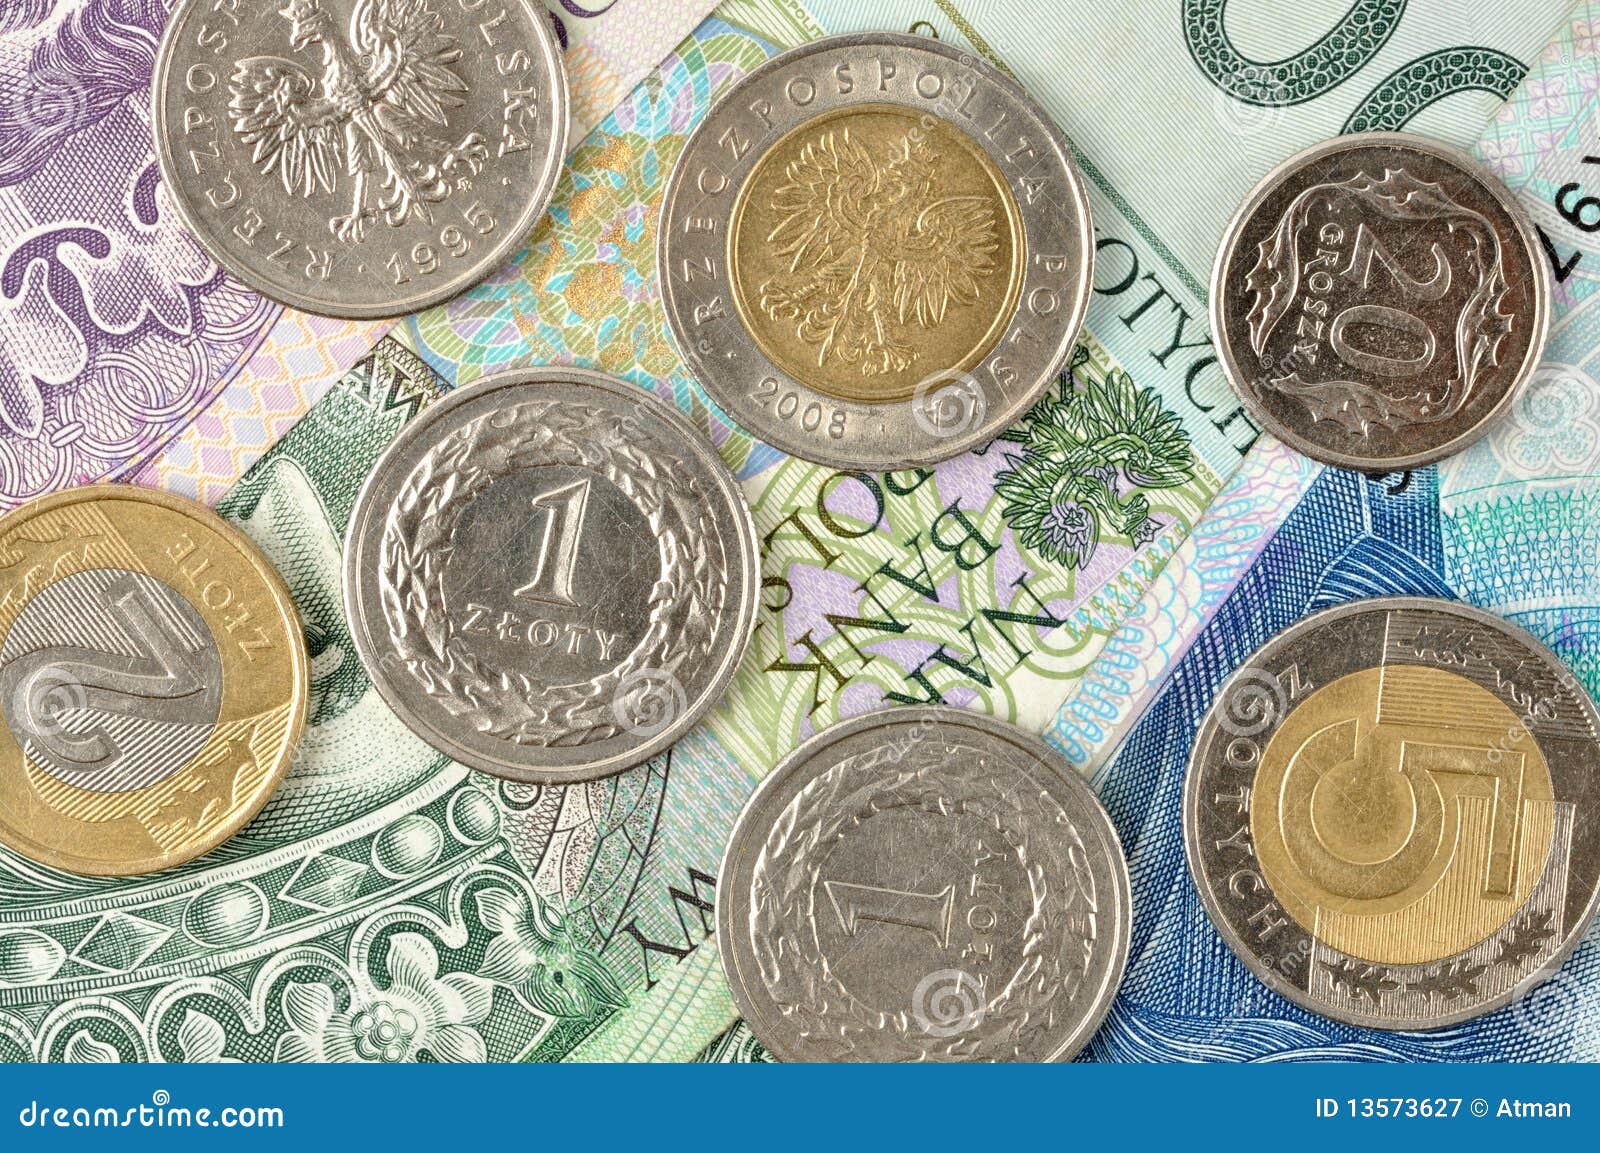 旧波兰货币 — 20 兹罗提背景高清摄影大图-千库网